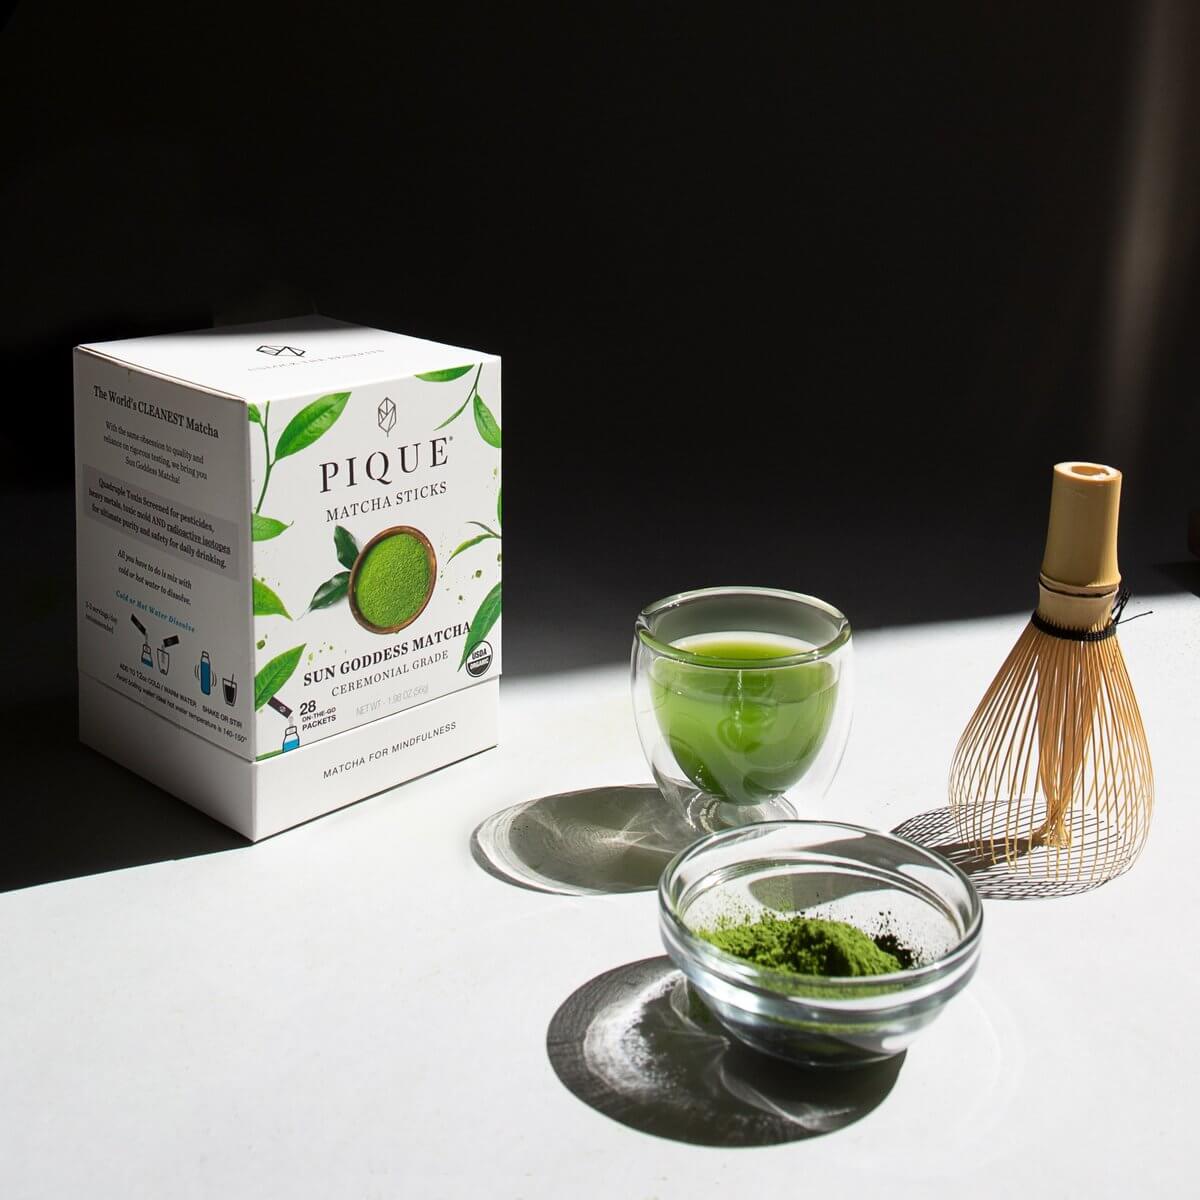 Pique Sun Goddess Matcha Green Tea Review